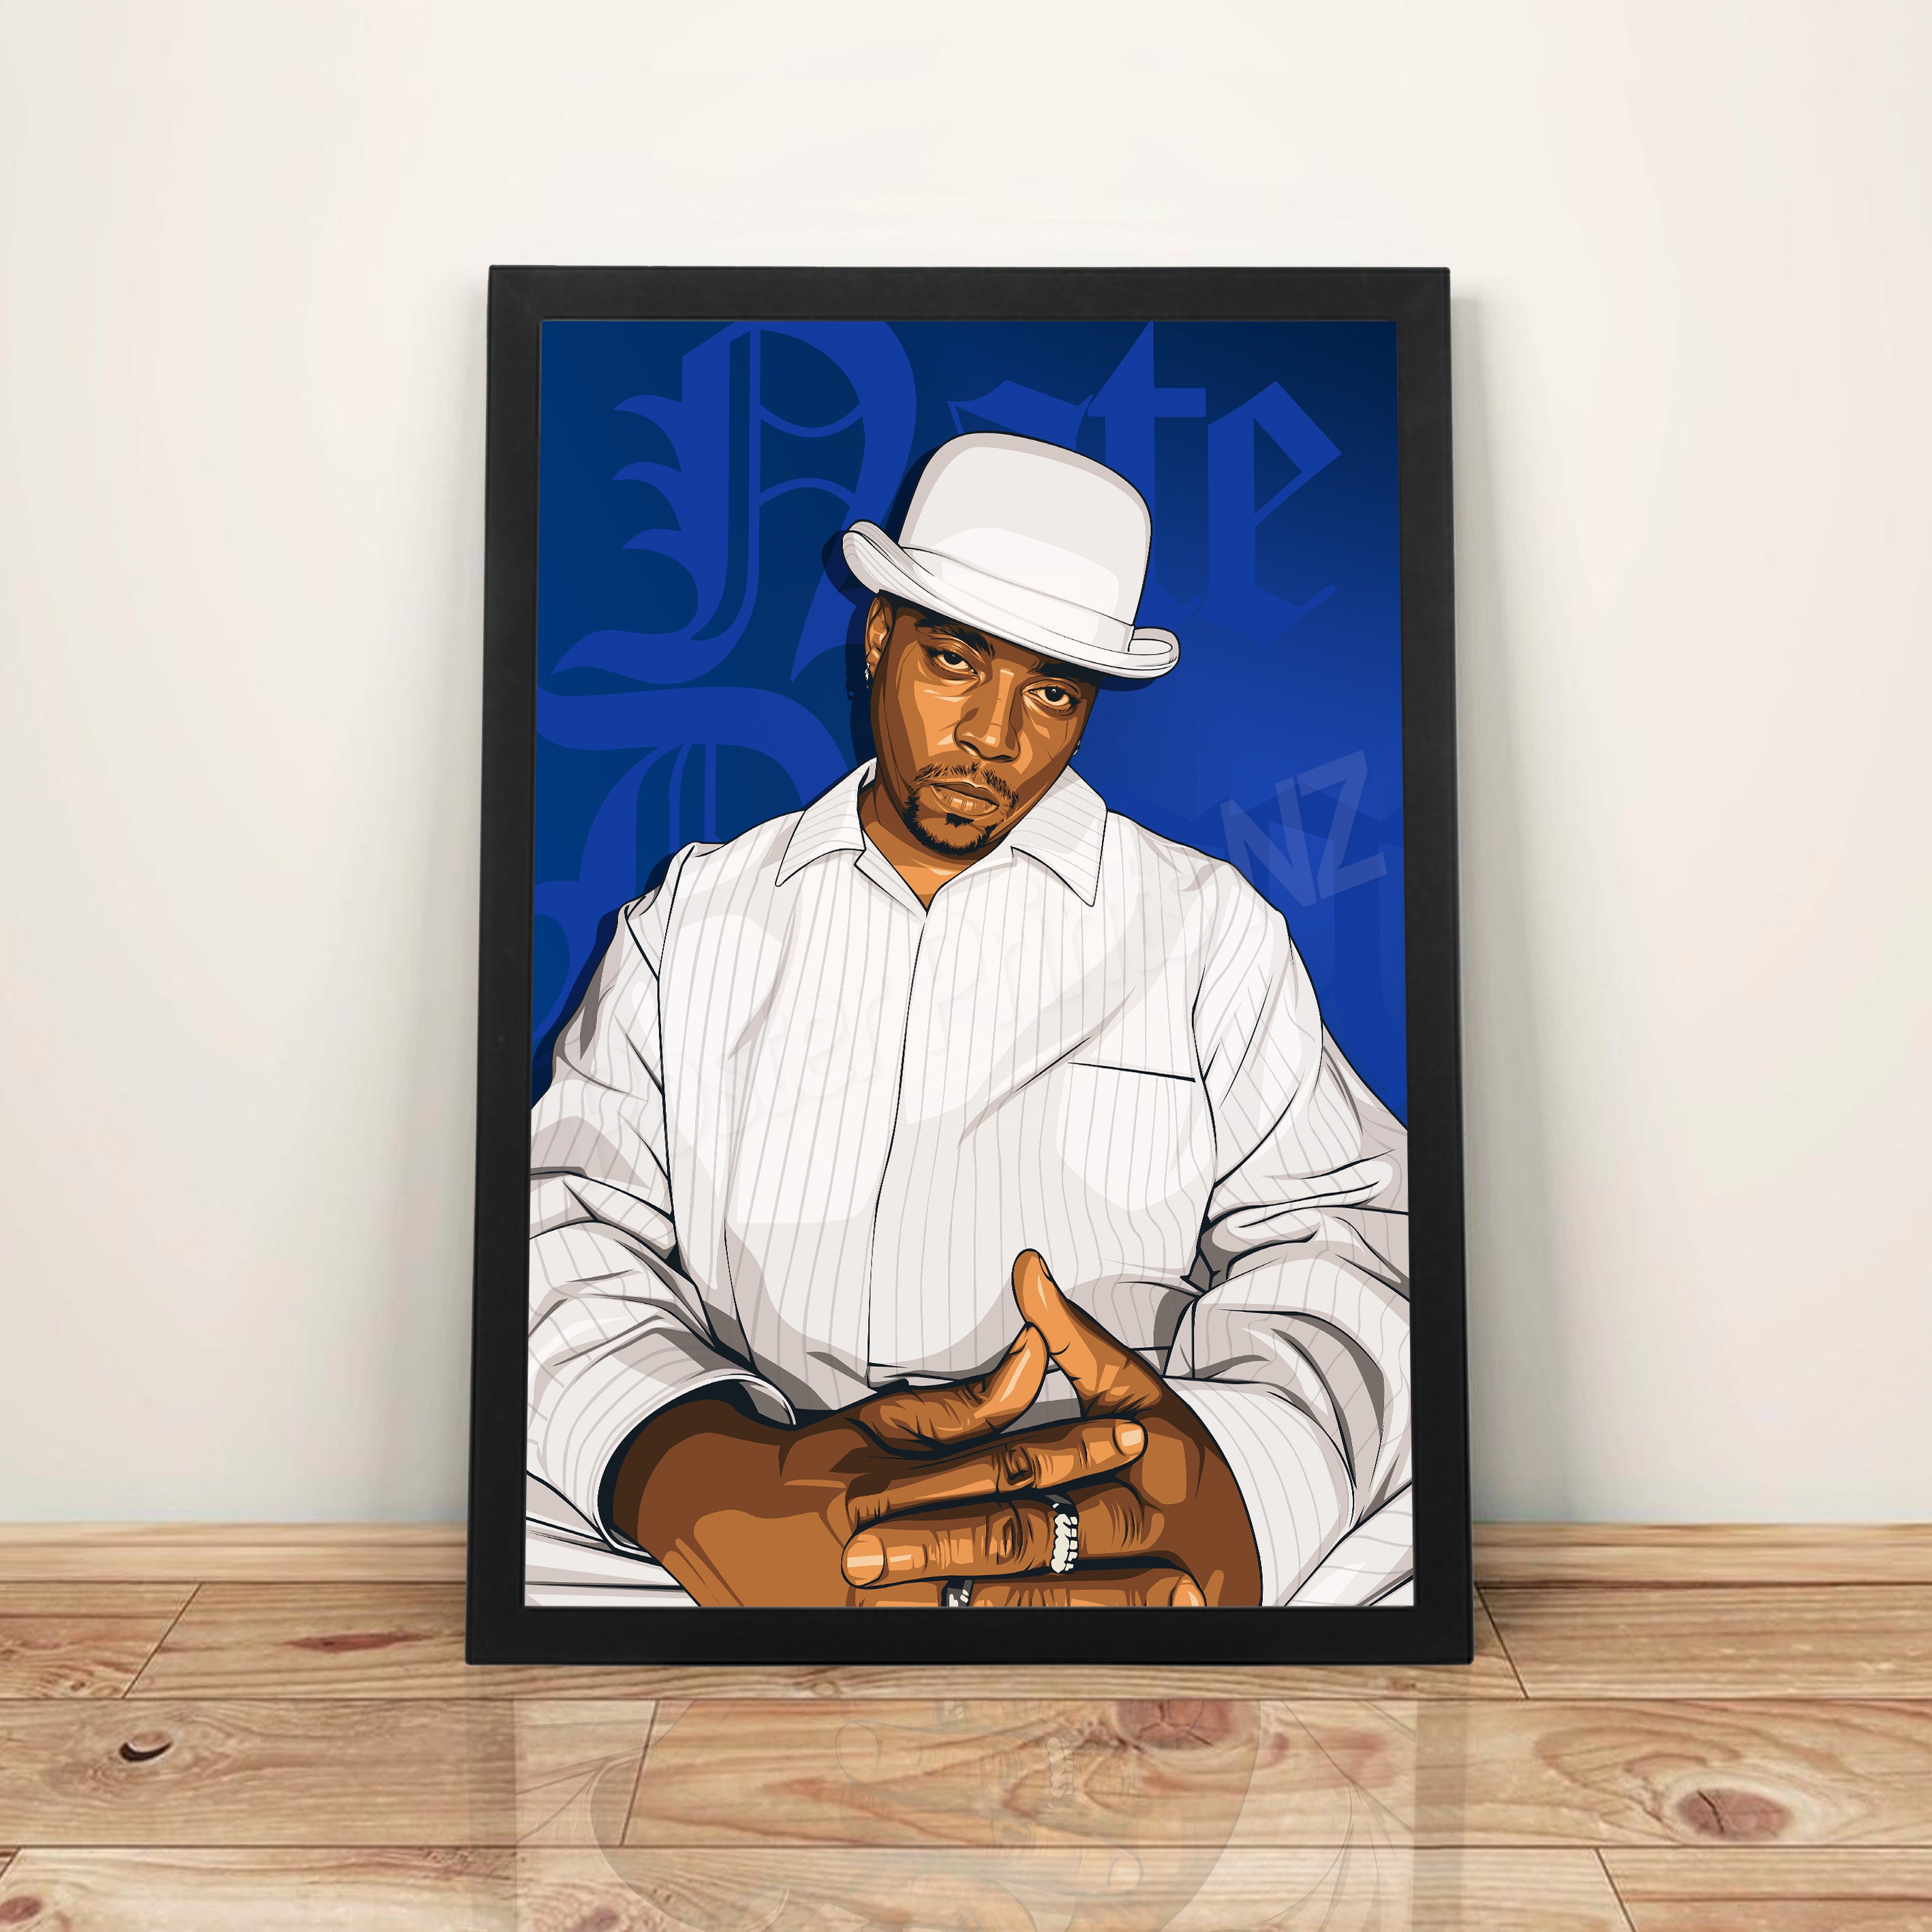 Nate Dogg - A3 Framed Art Poster